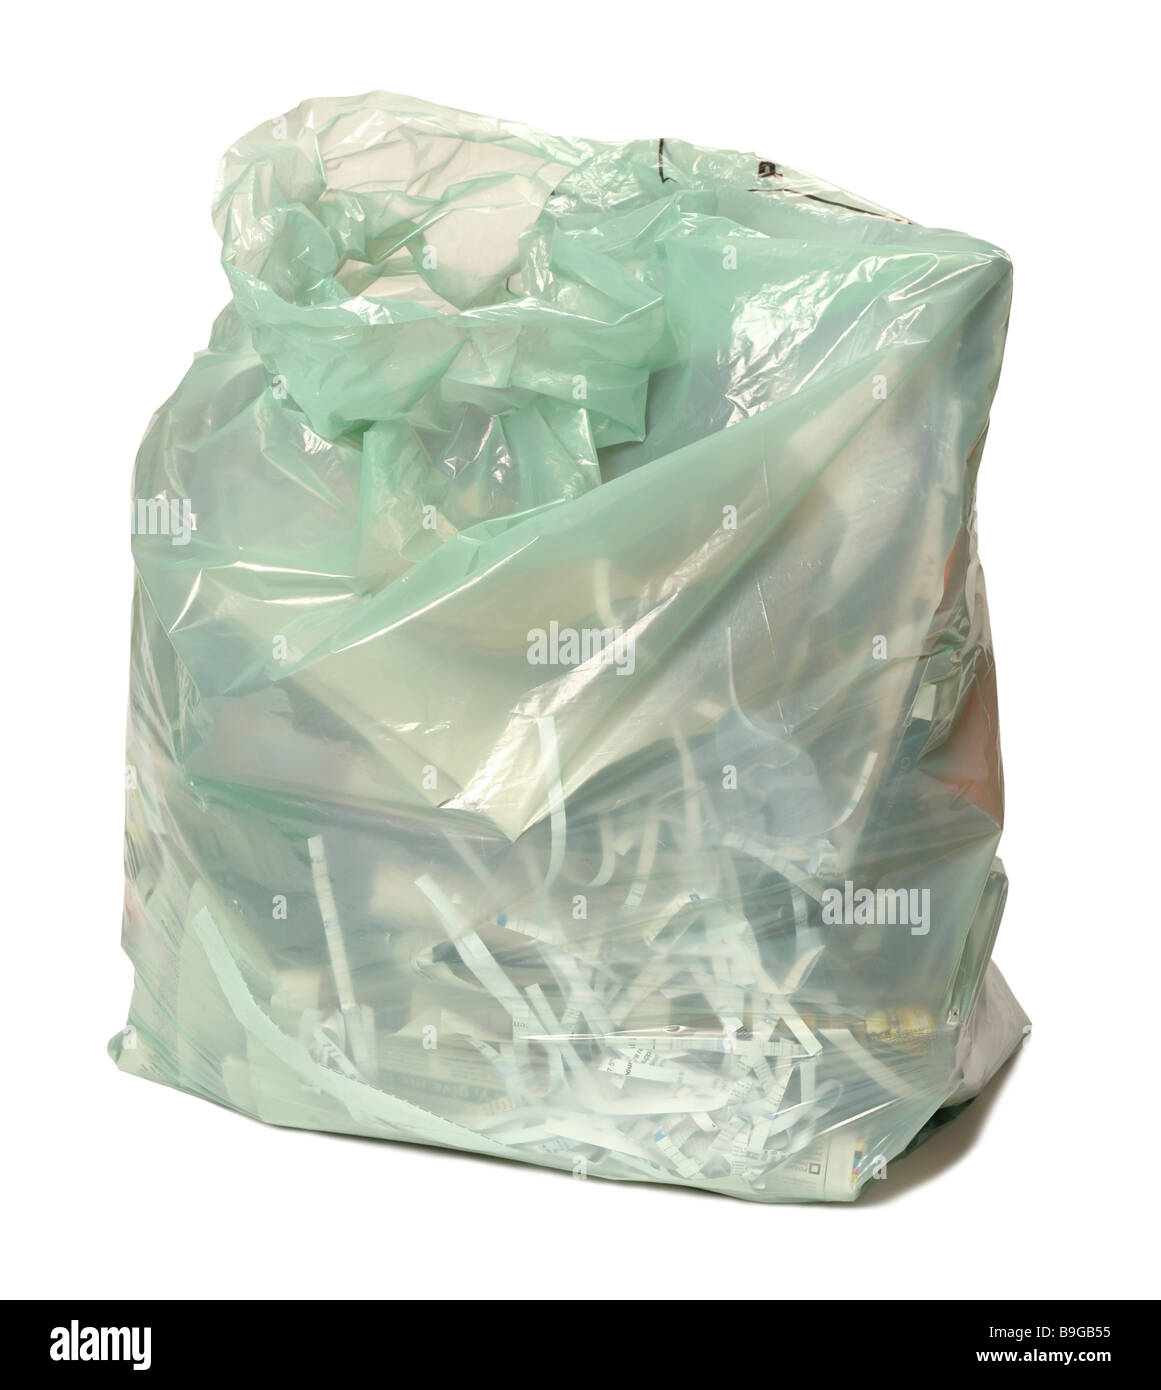 Tasche von Altpapier Recycling Stockfotografie - Alamy